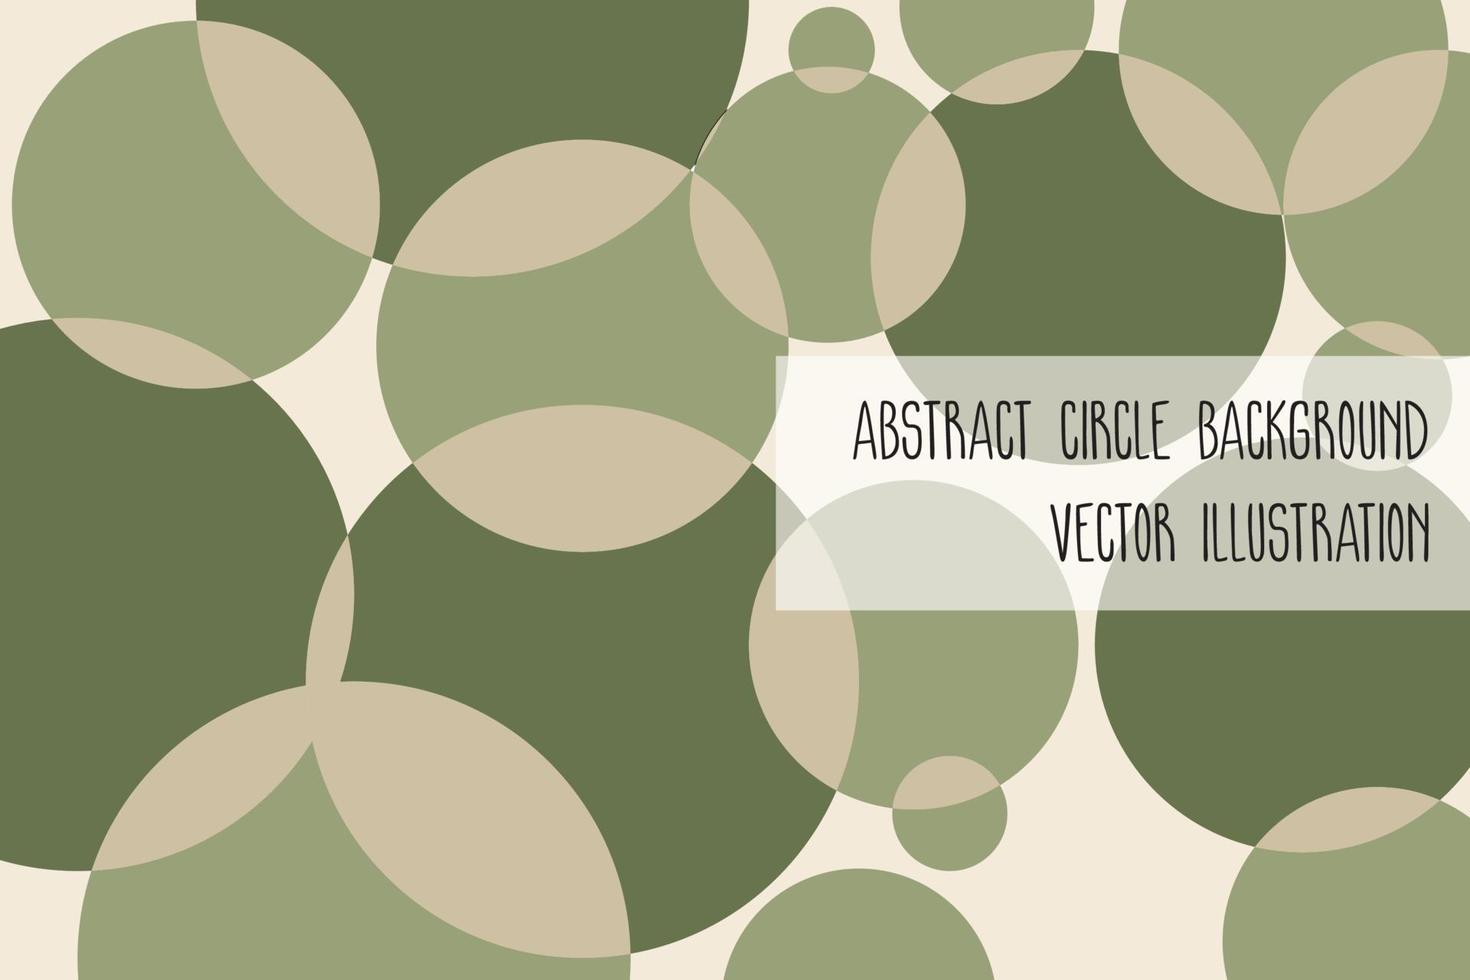 abstrakt cirkel bakgrund pastell grön färg, vektor illustration.